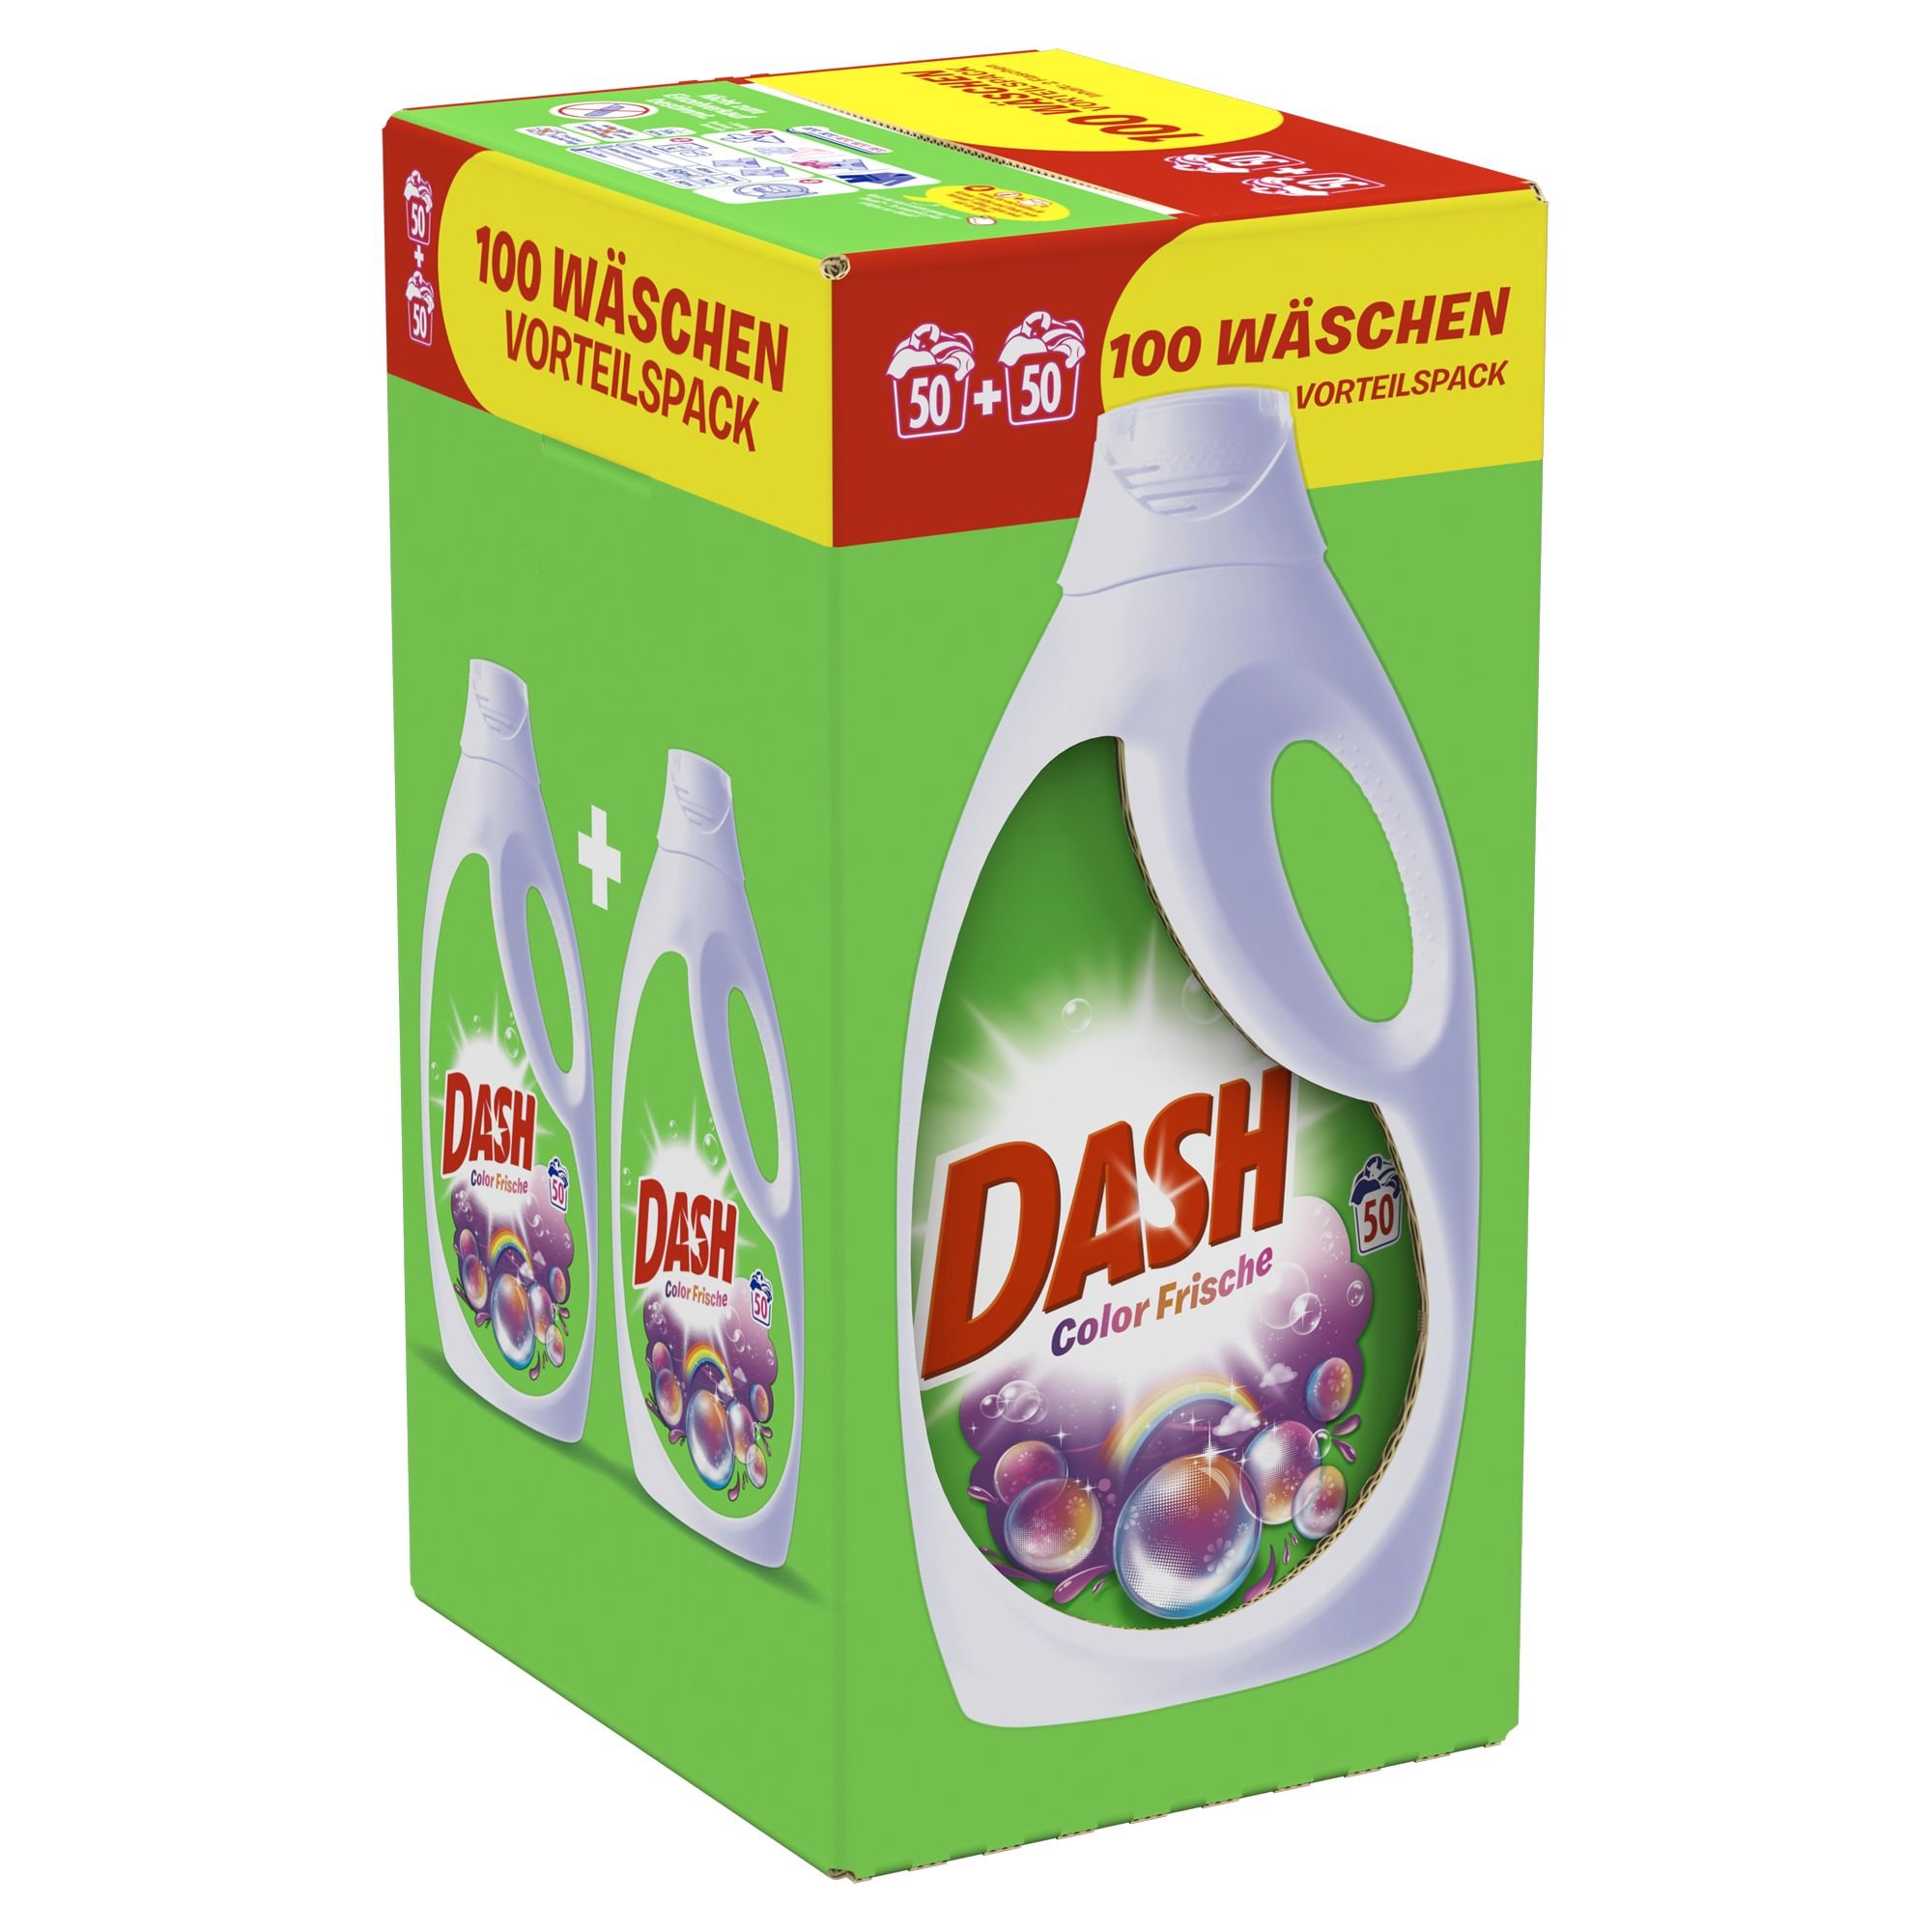 Dash Colorwaschmittel Flüssig Color Frische, 6,5 l - 100 Waschladungen, 1er Pack (1 x 6,5 L)